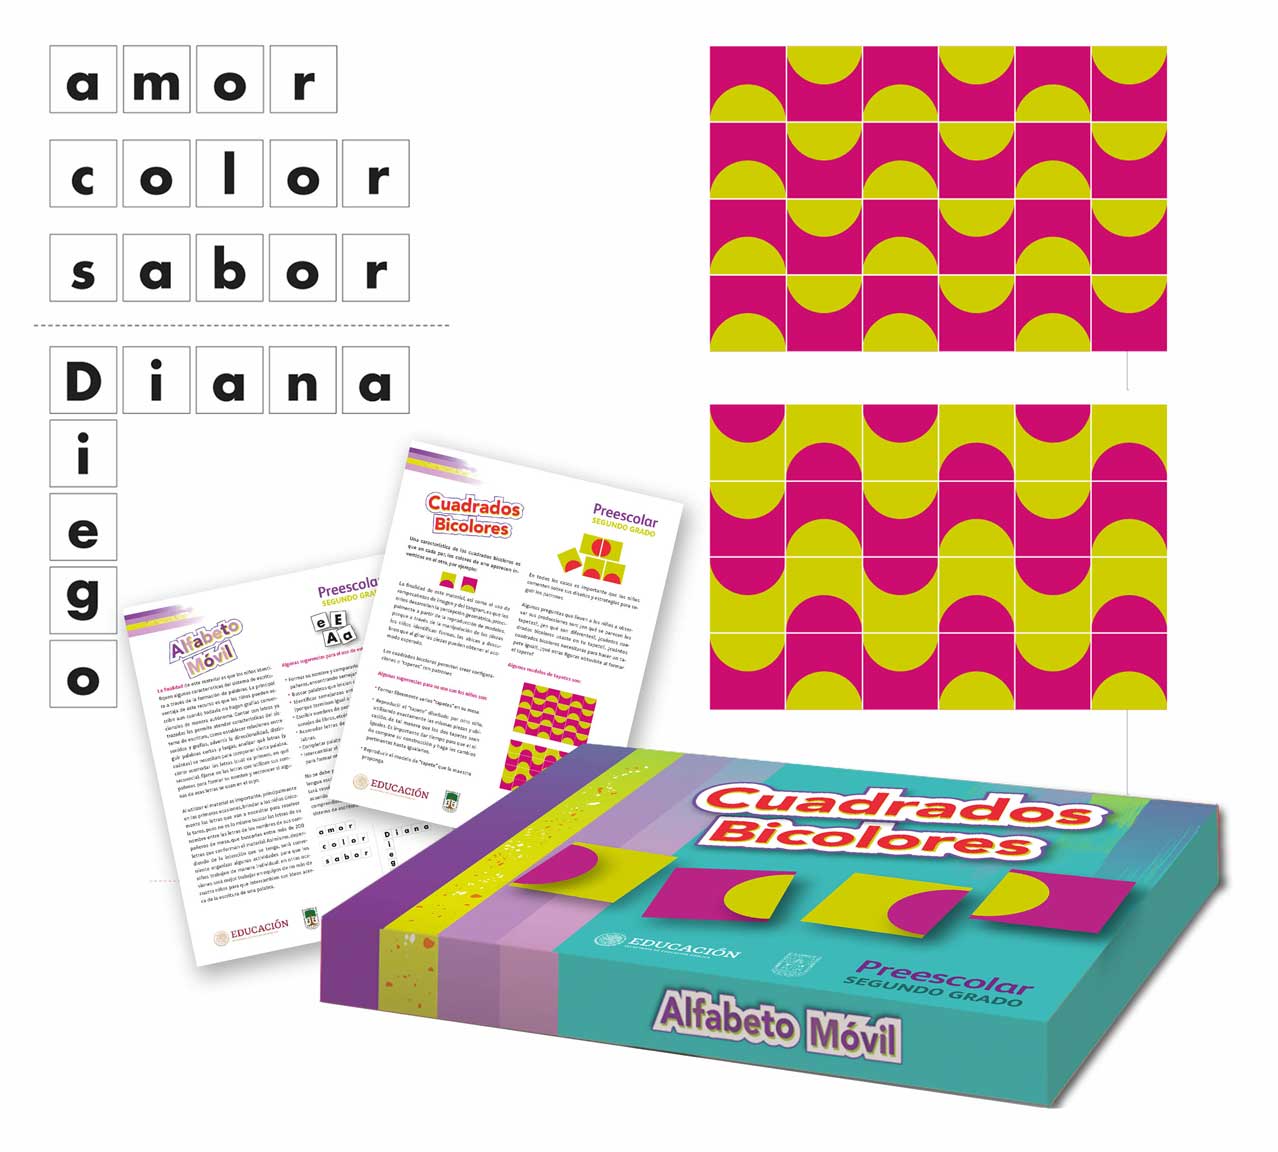 Alfabeto móvil/cuadrados bicolores Libro de Preescolar Grado 2° 